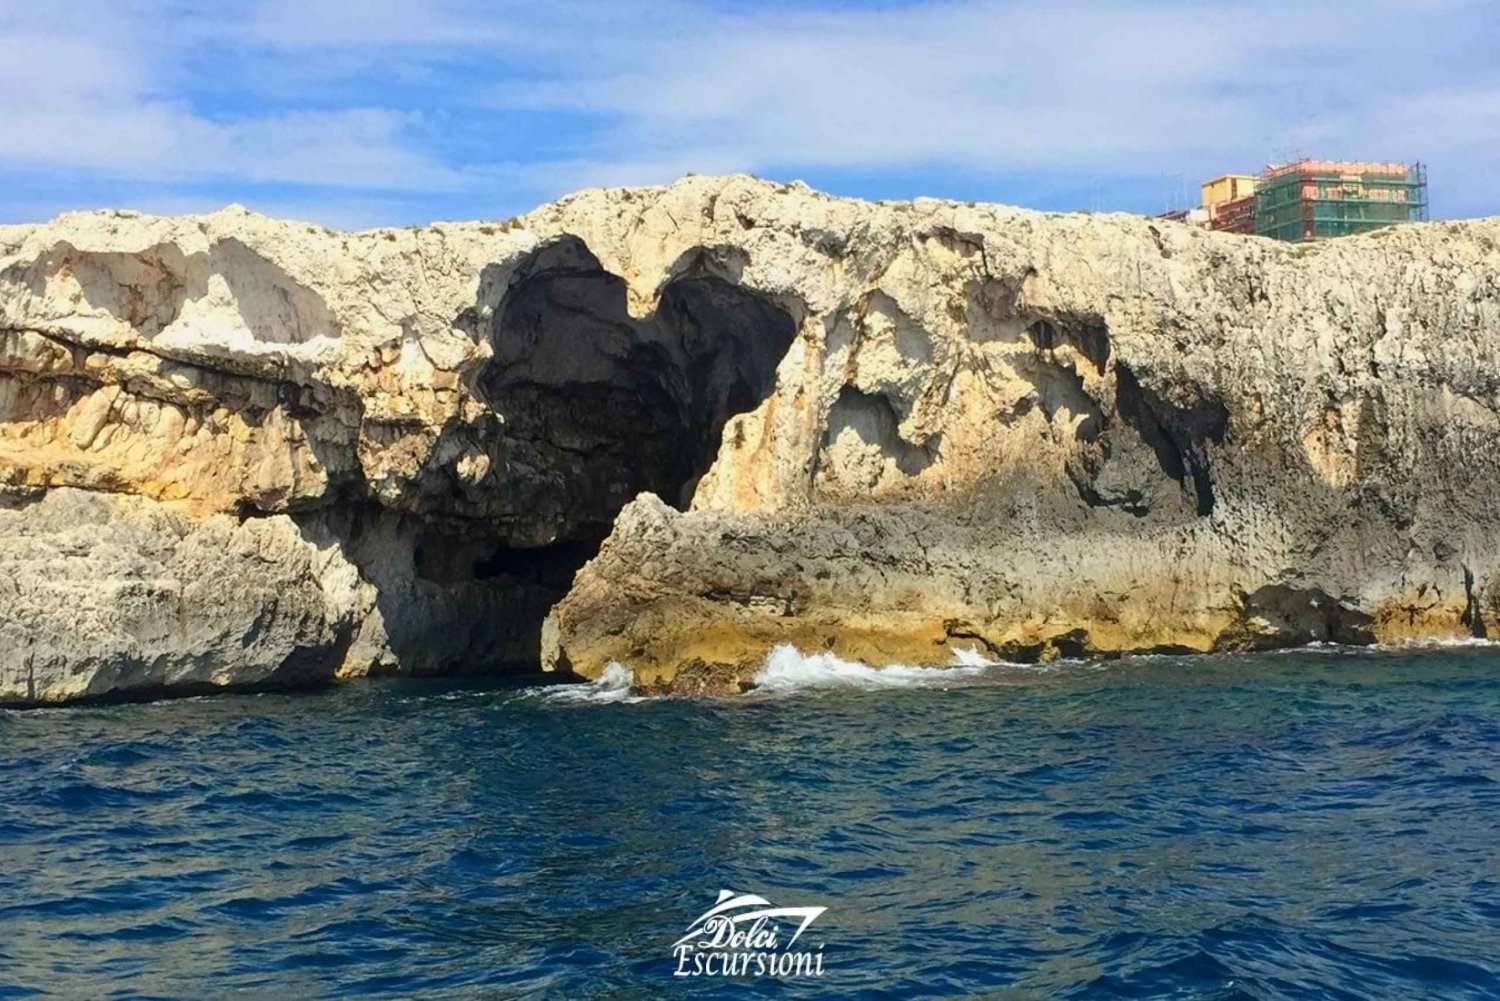 Syracuse : Tour en bateau de l'île d'Ortigia et des grottes marines